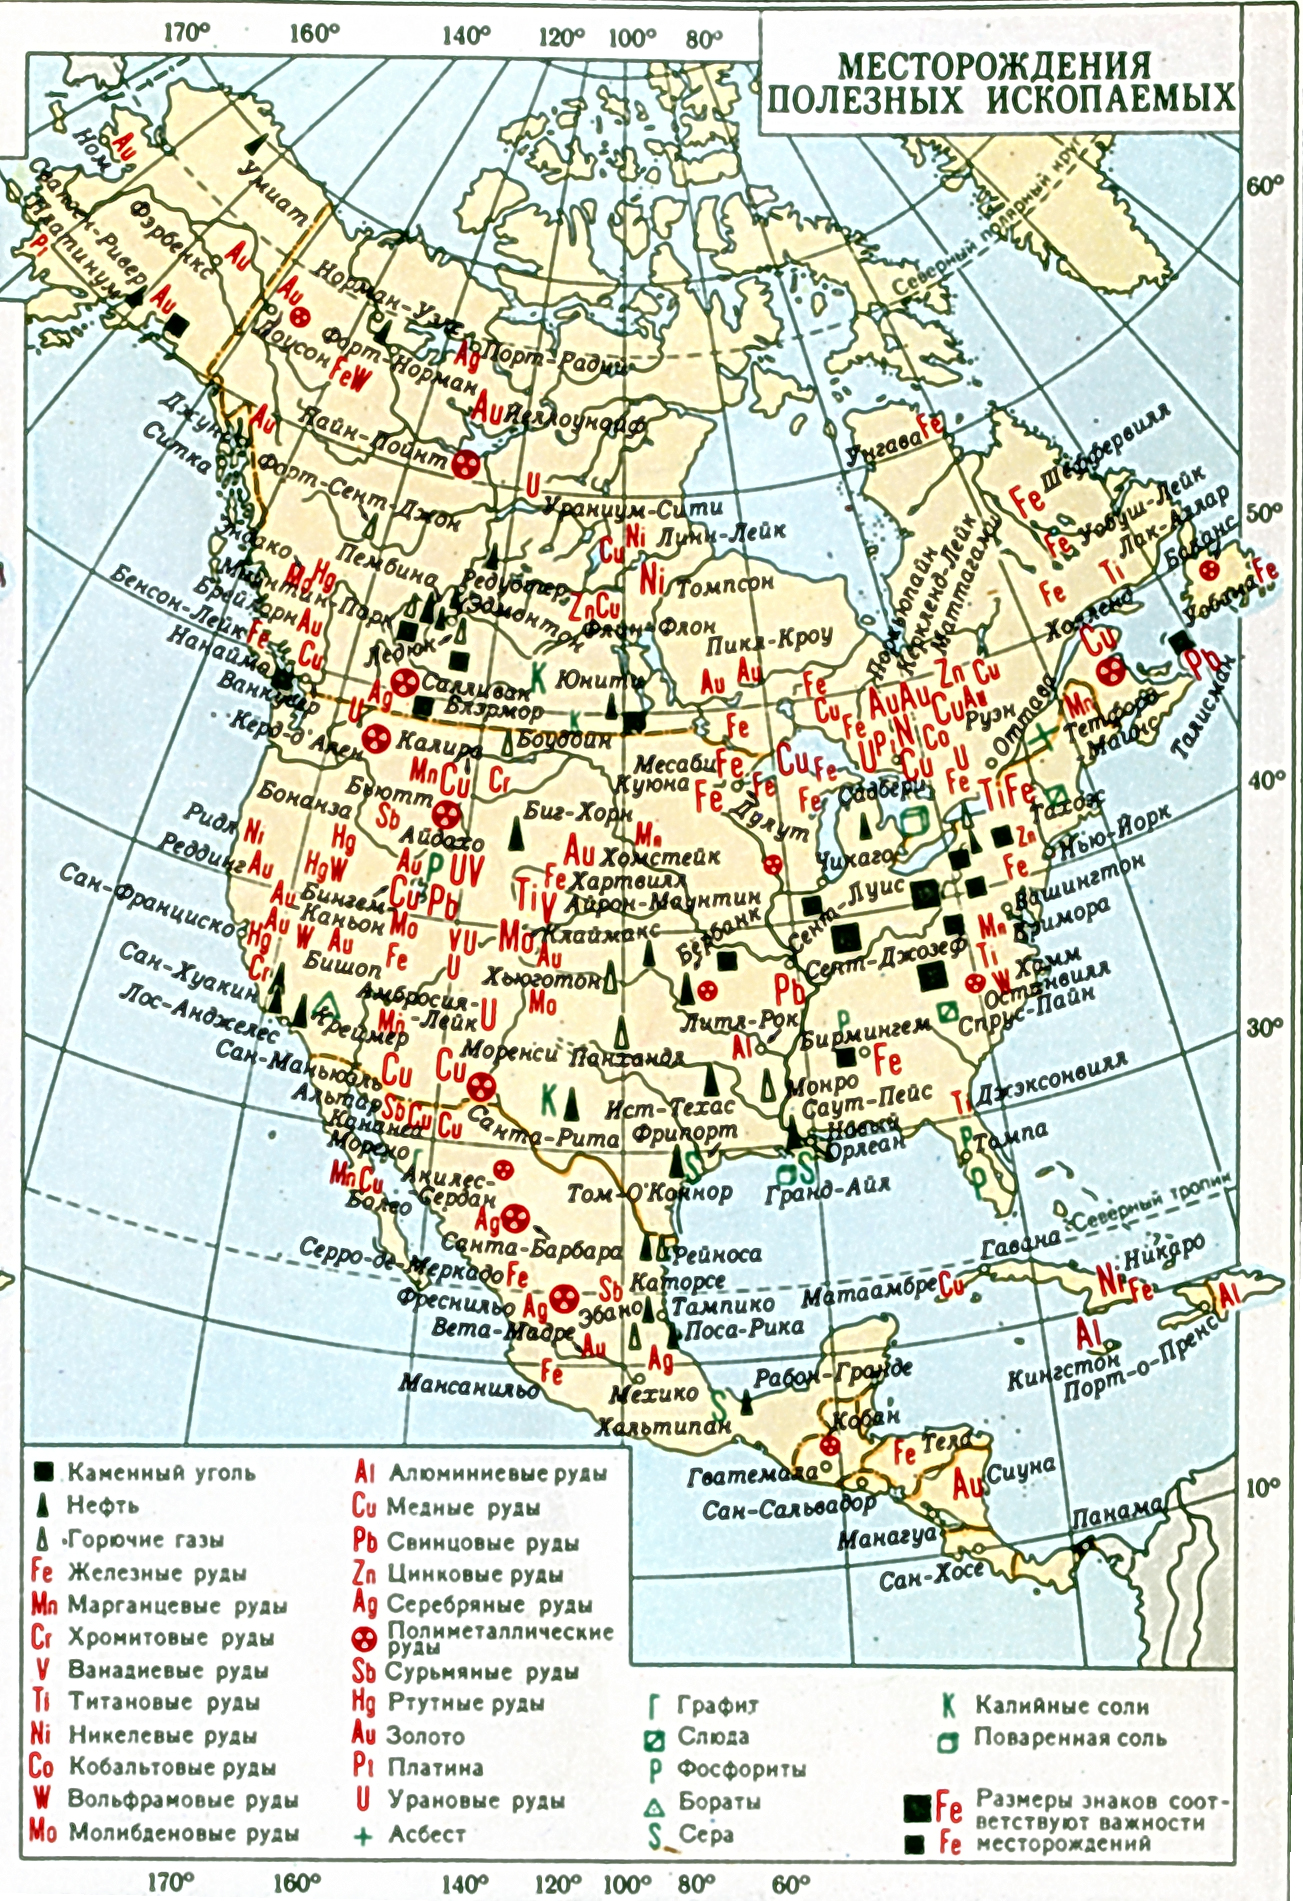 Ископаемые северной америки на контурной карте. Минеральные ресурсы США карта. Карта Северной Америки месторождения полезных ископаемых. Полезные ископаемые США на карте. Месторождения полезных ископаемых Северной Америки.